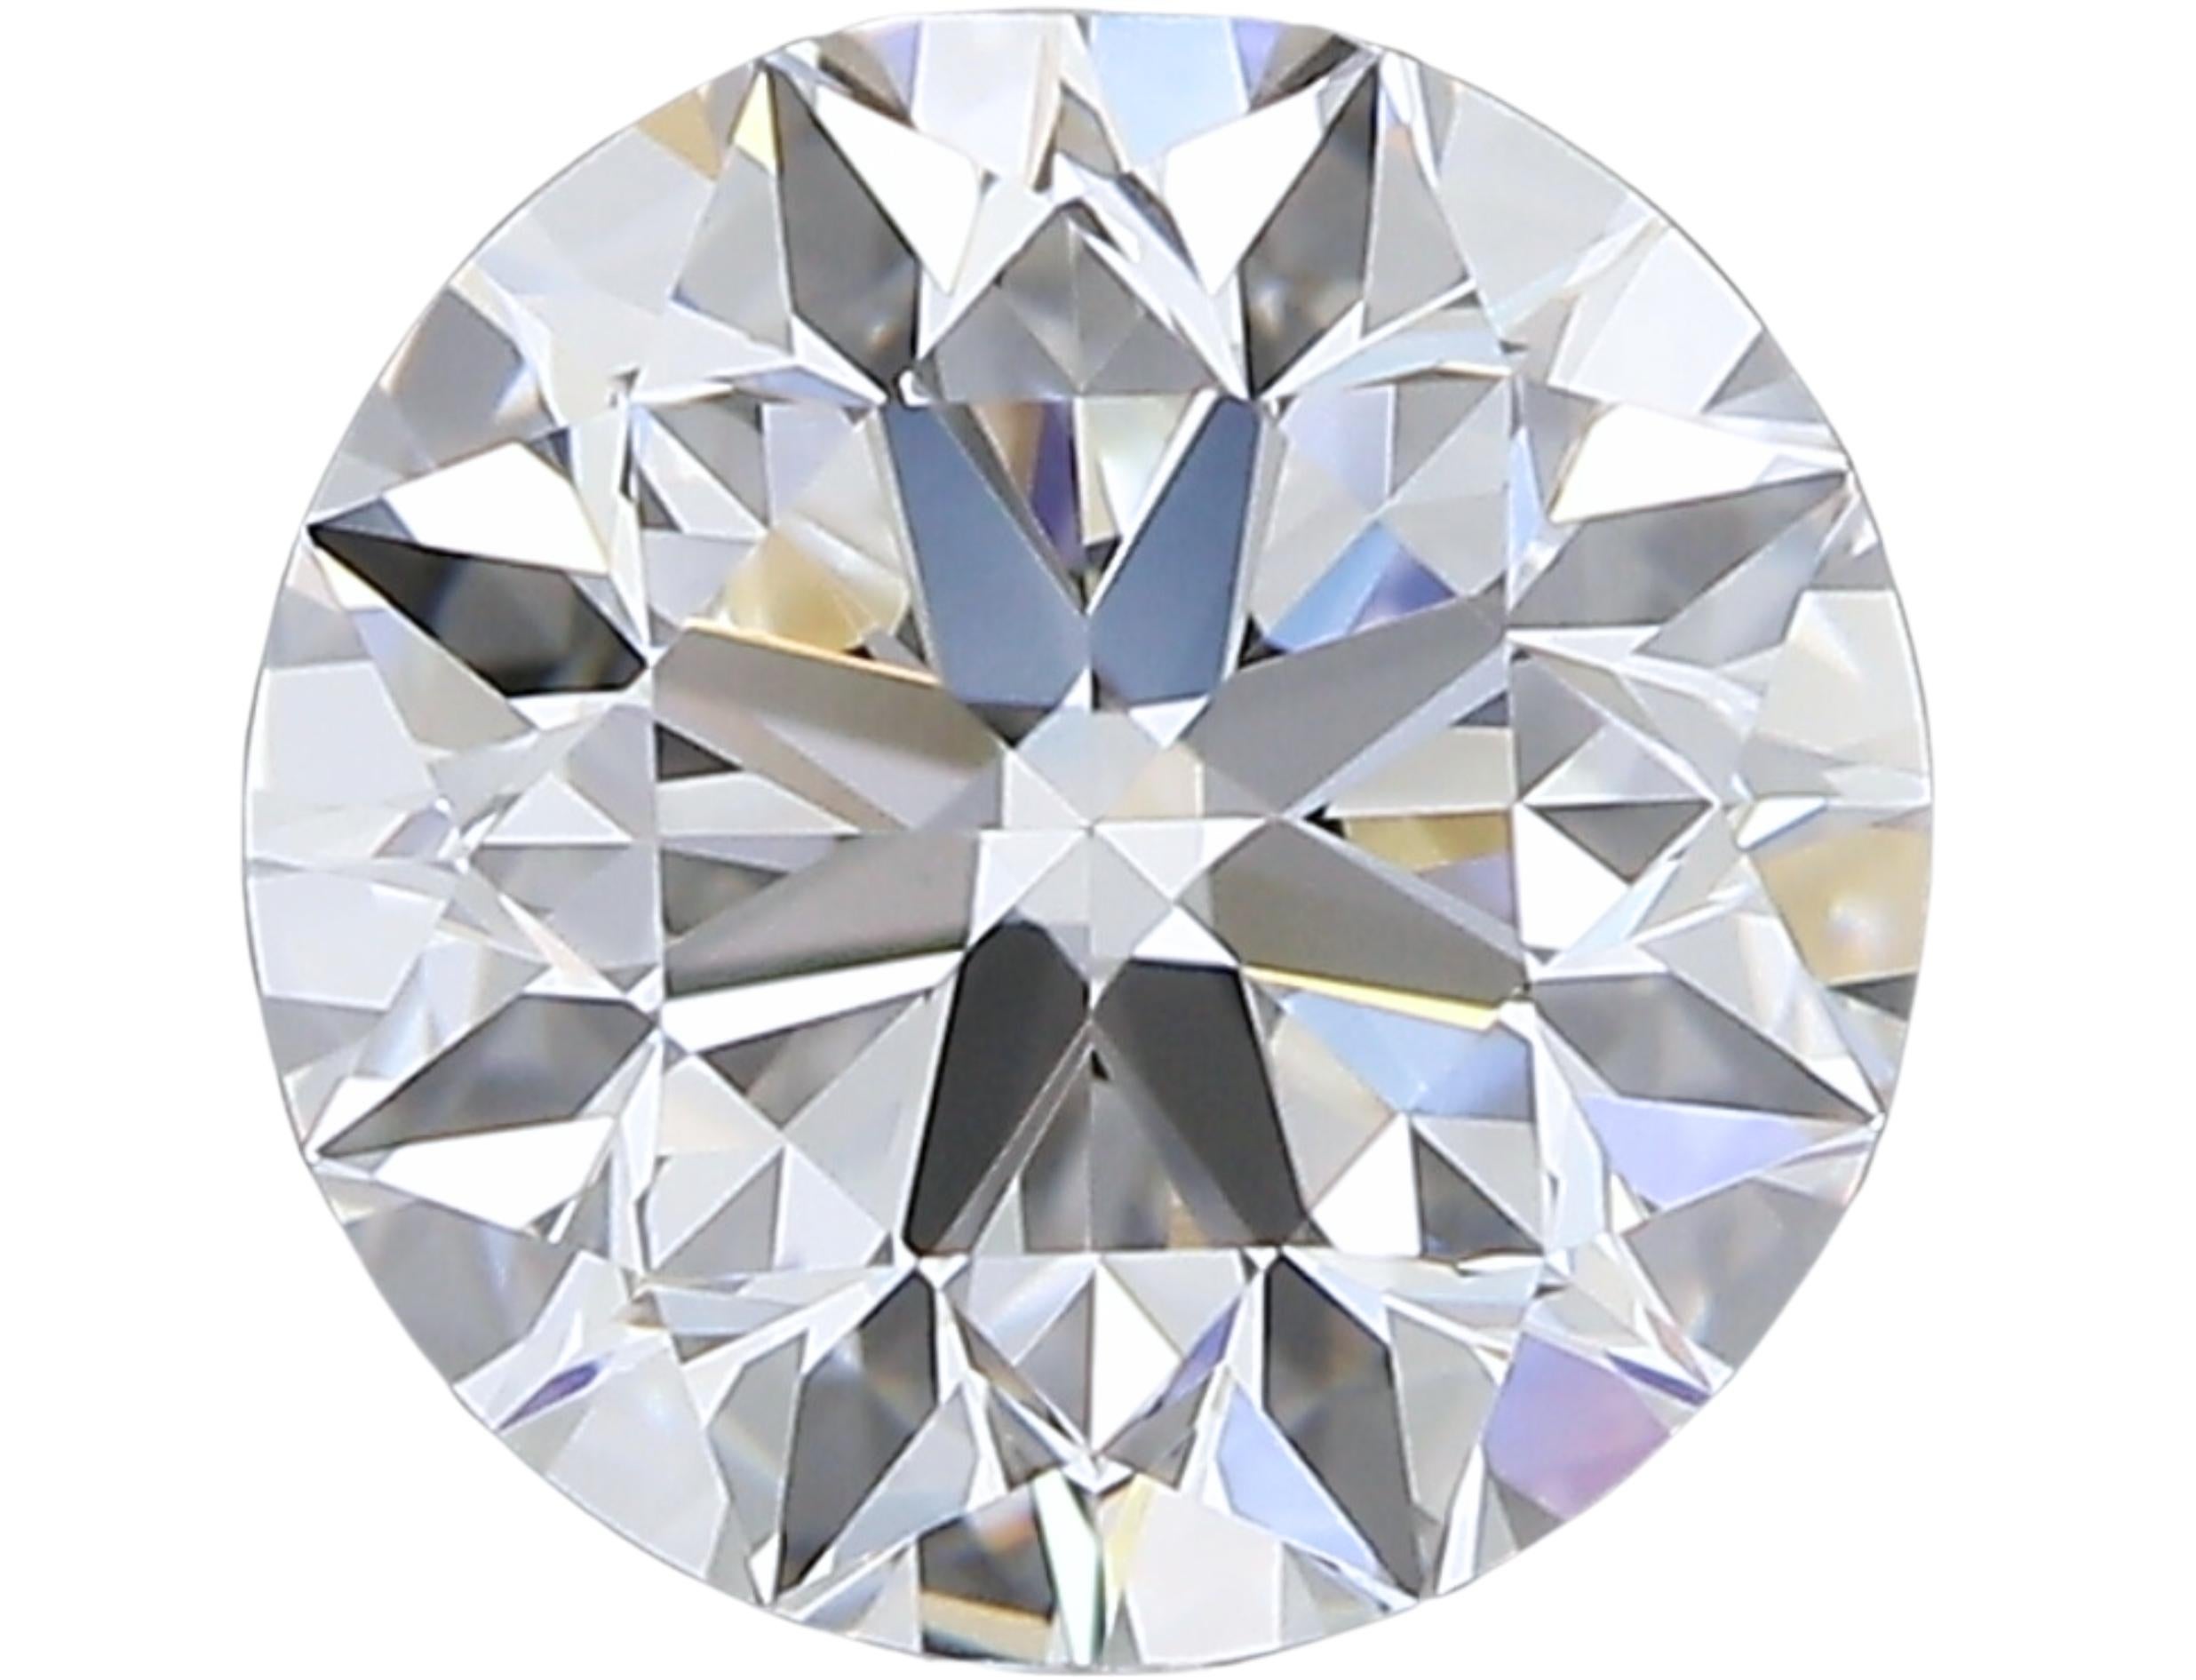 Diamant rond de taille naturelle de 0,90 carat H VVS1Excellente taille. Ce diamant est accompagné d'un certificat GIA et d'un numéro d'inscription au laser.

Ce diamant exquis affiche un poids remarquable de 0,90 carat et est méticuleusement taillé